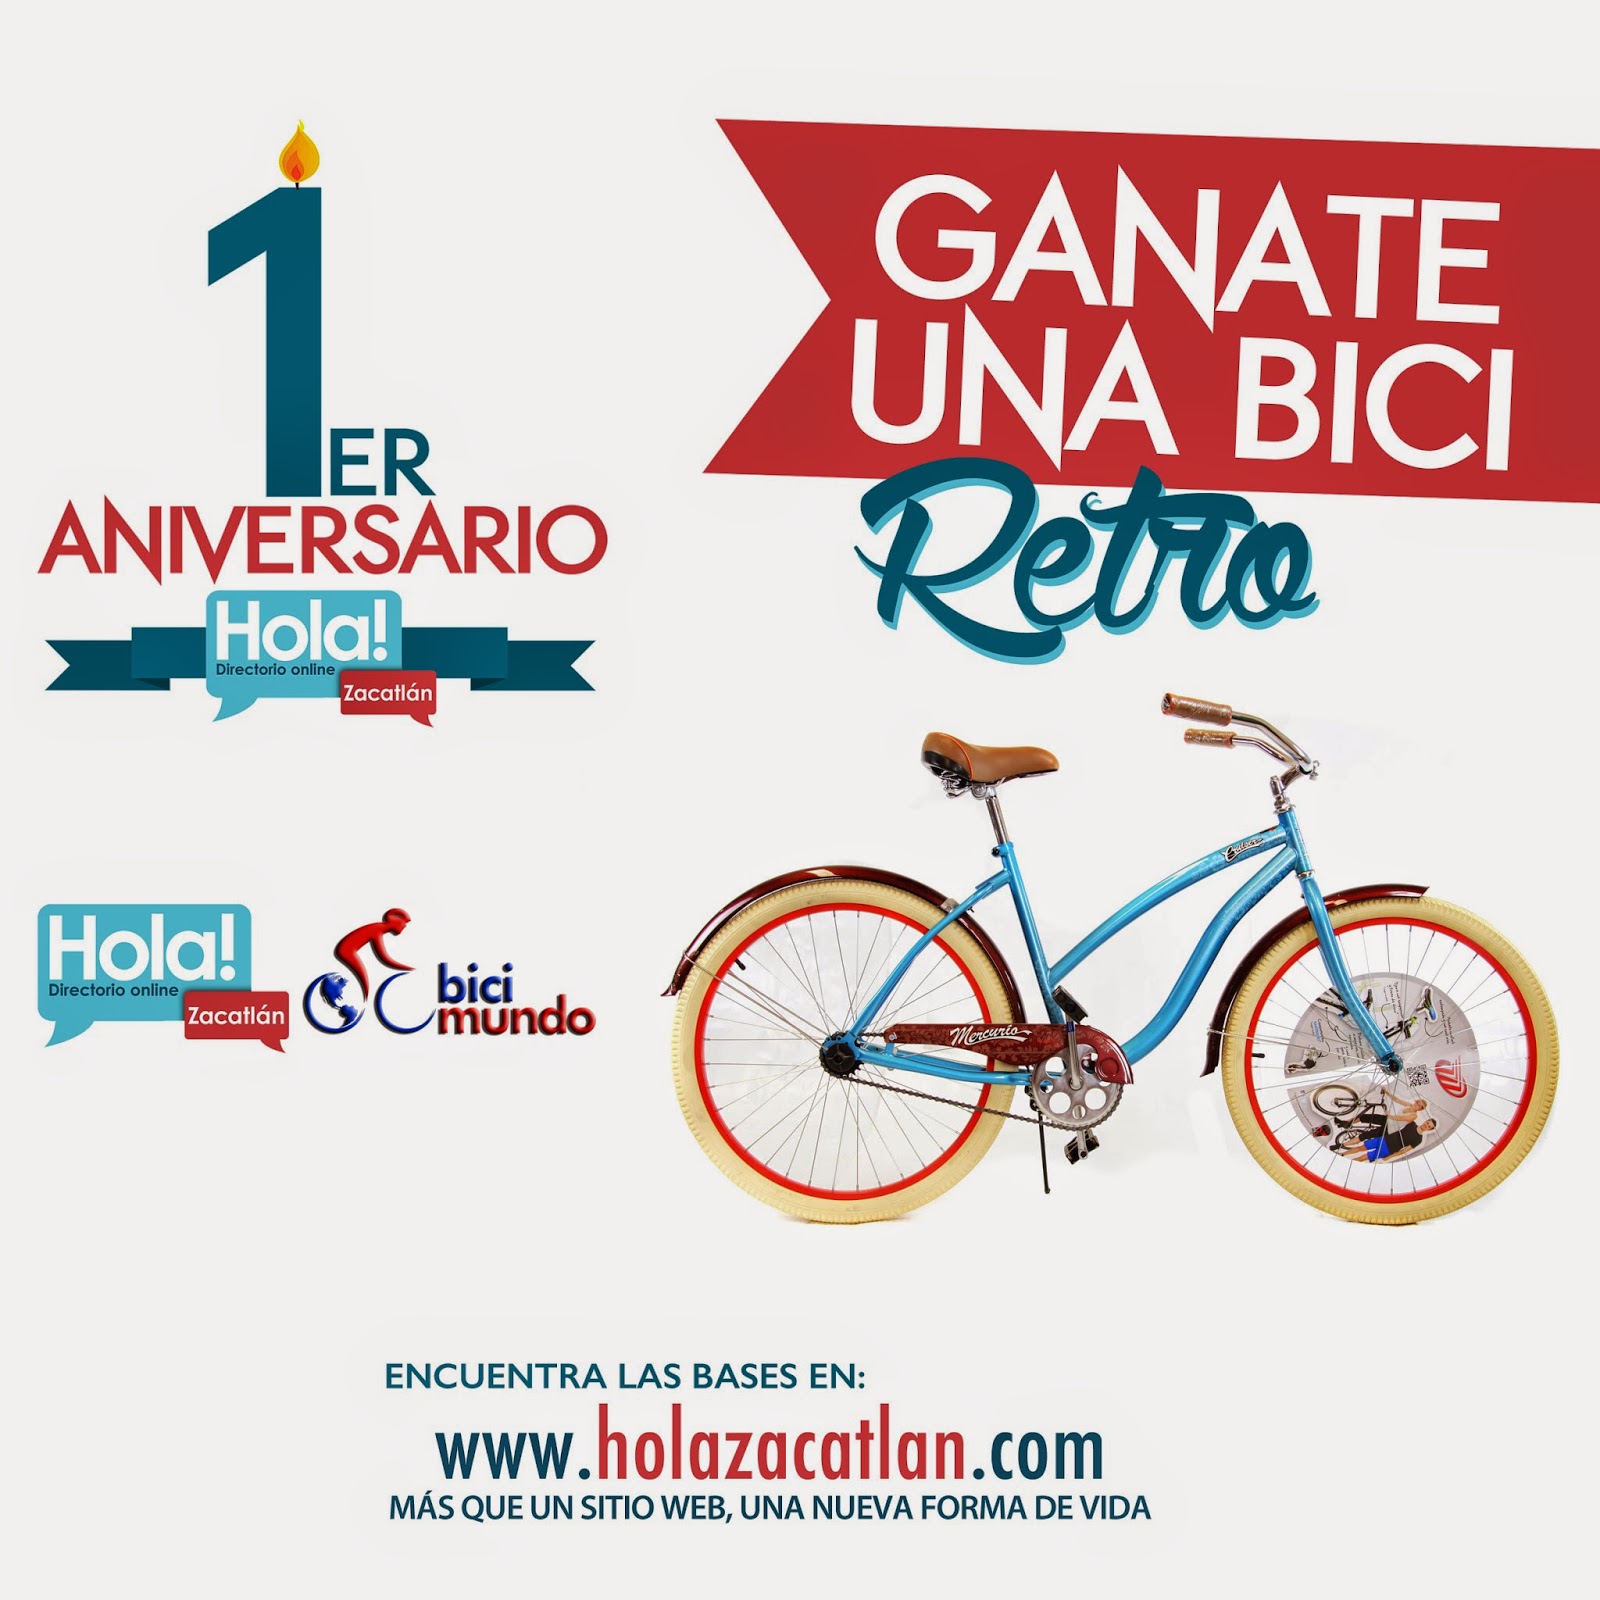 Gana una bicicleta retro con Bici mundo y Hola! Zacatlán por el primer aniversario